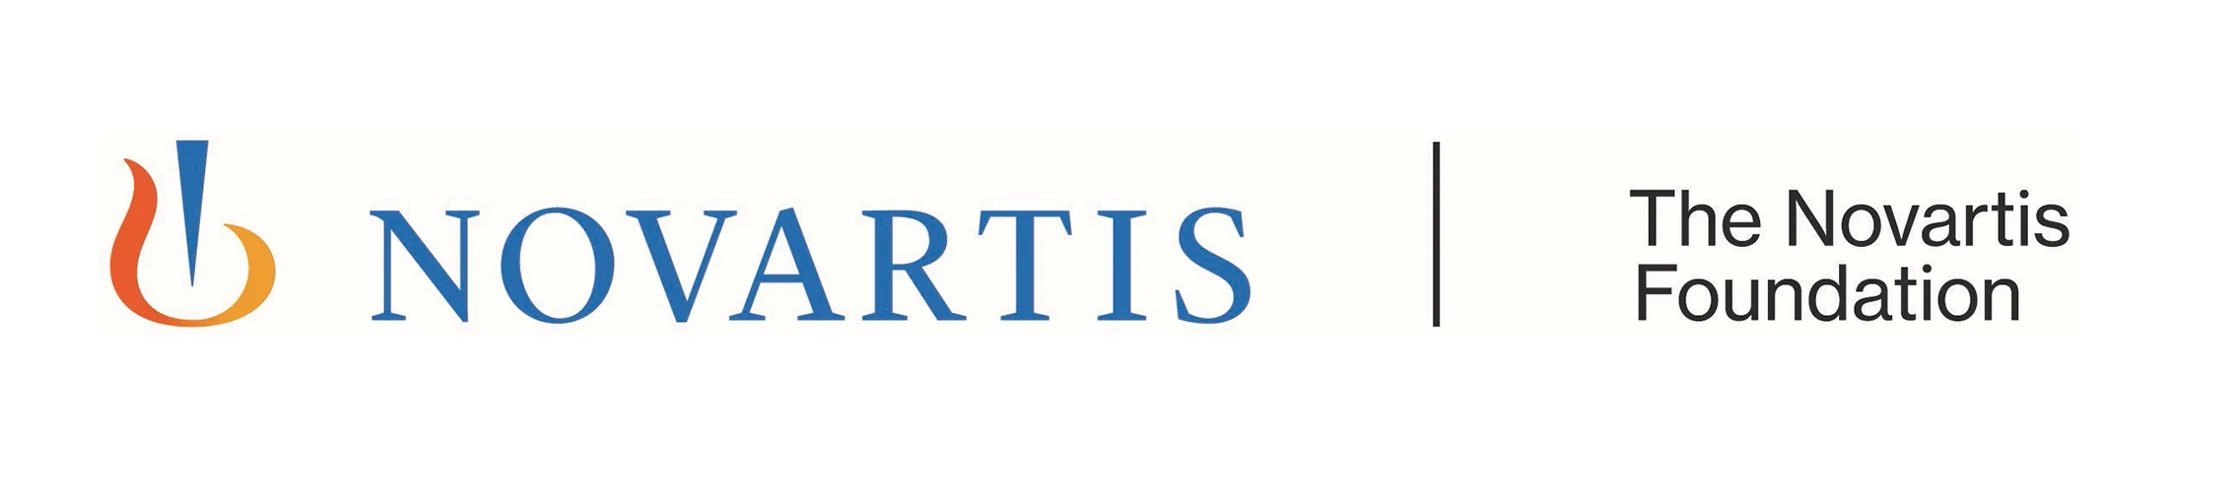 novartis-new-sponsor